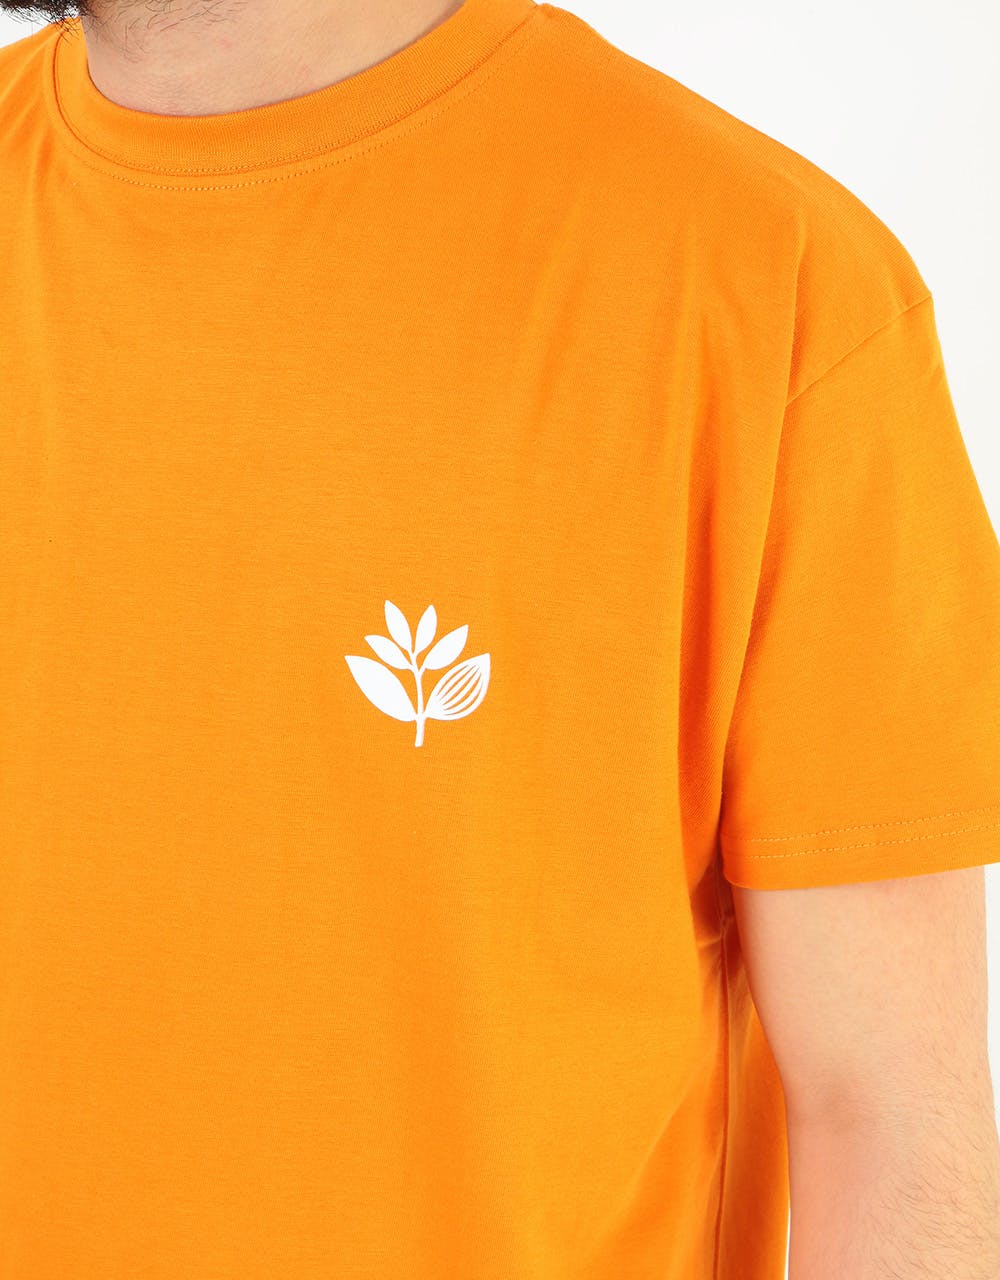 Magenta Classic Plant T-Shirt - Orange